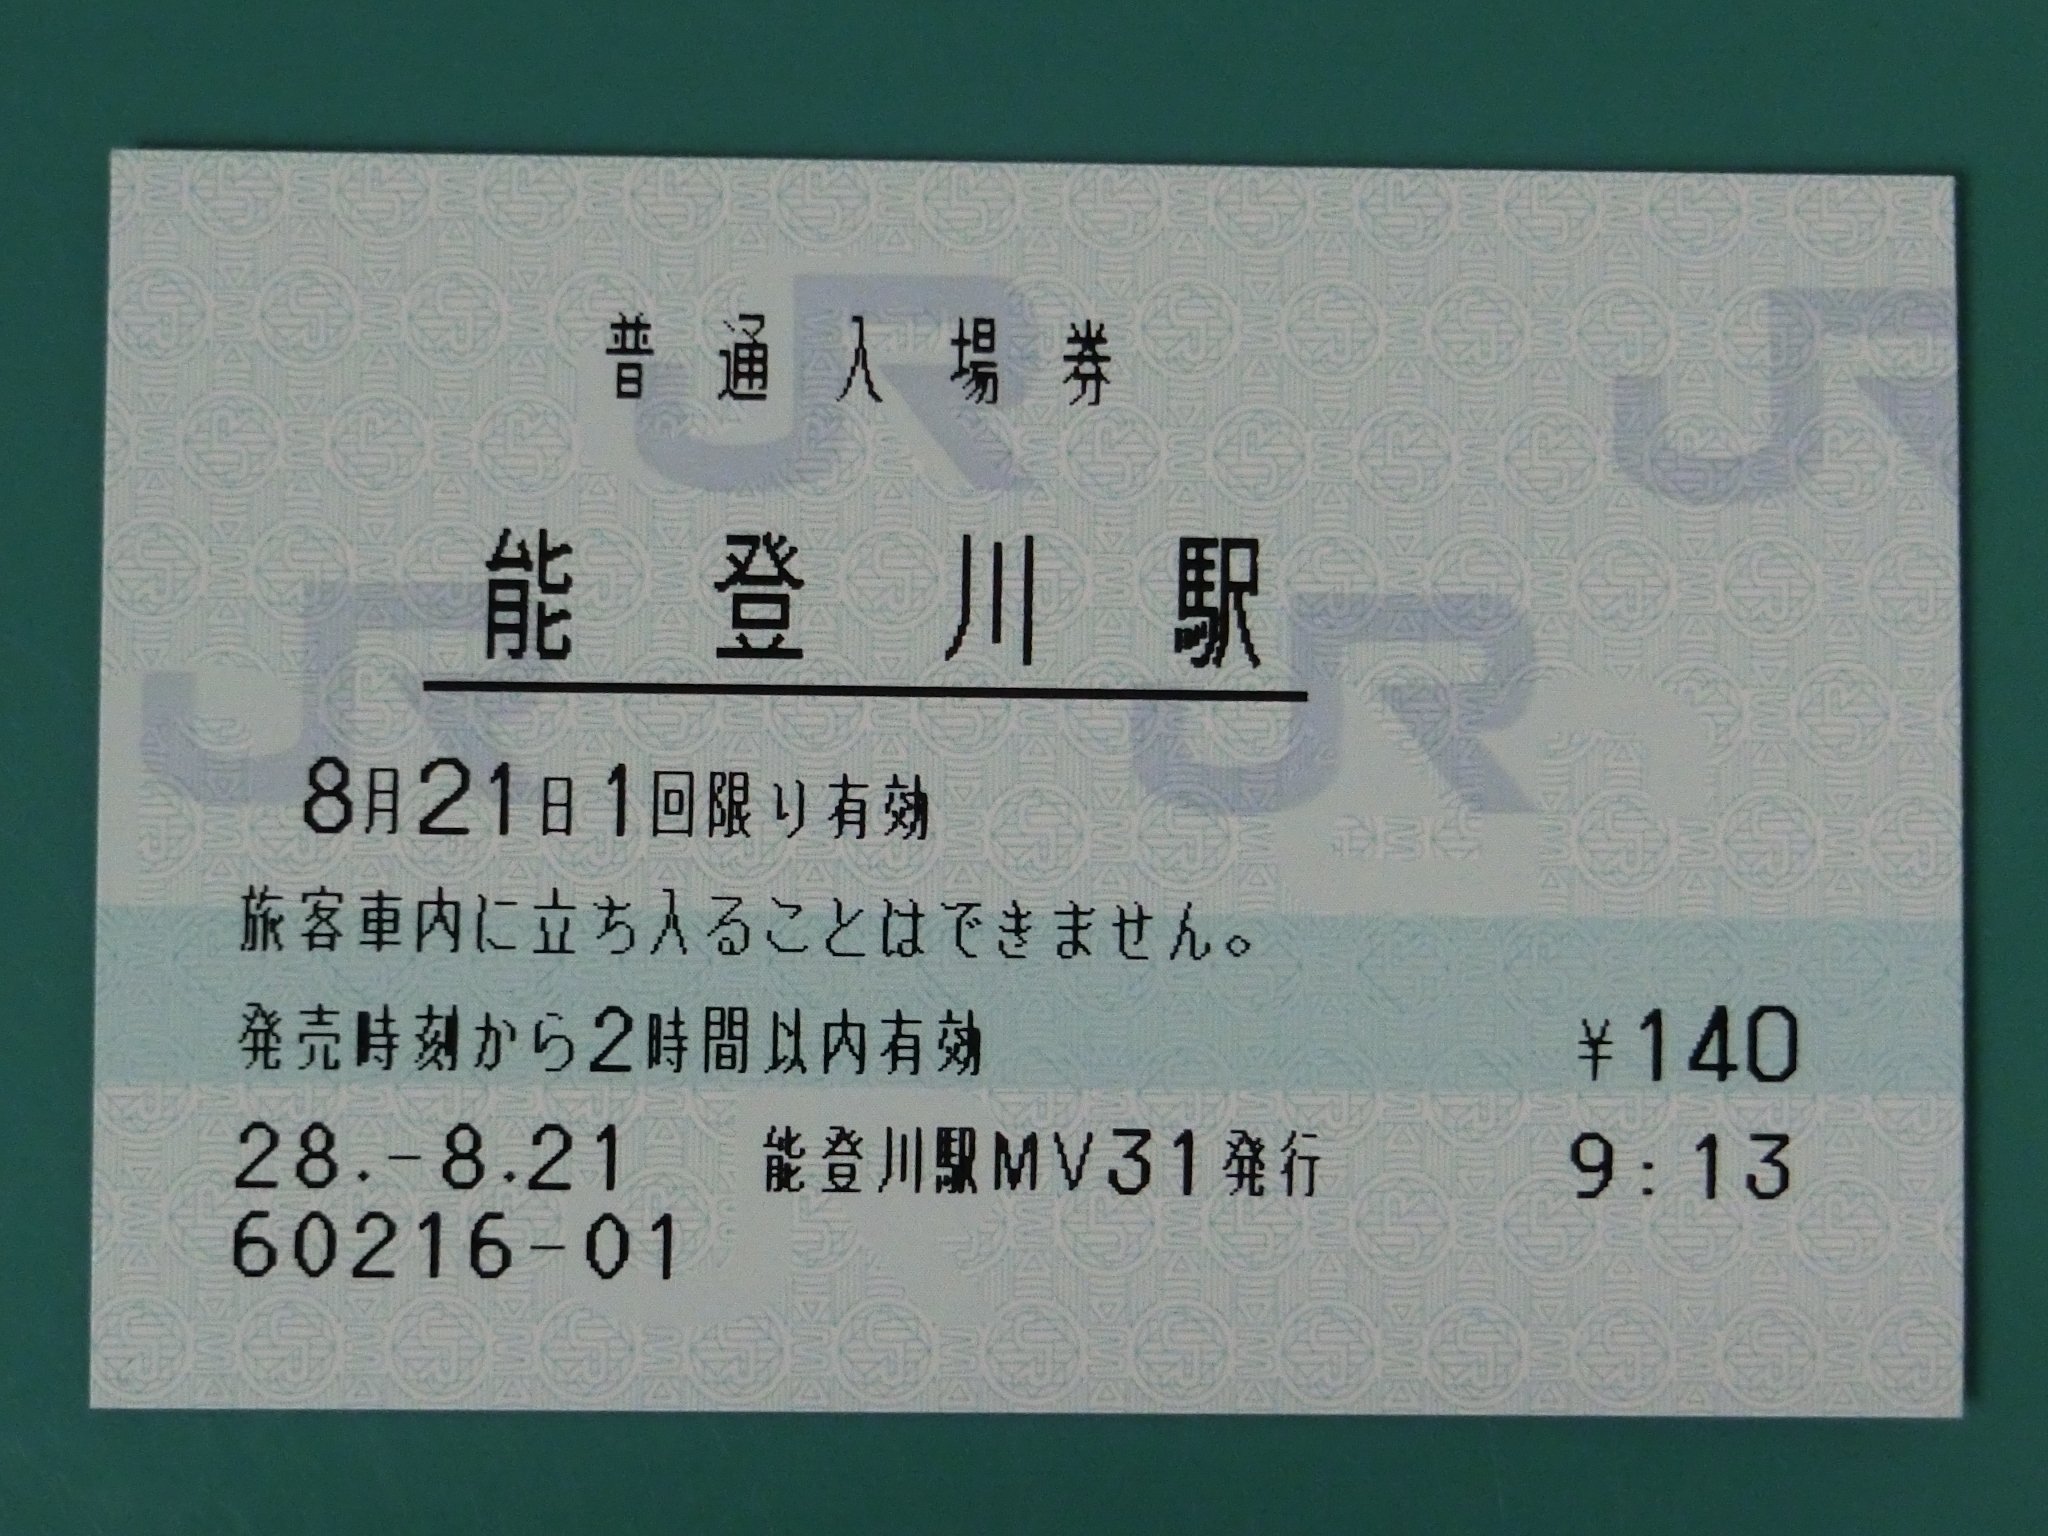 乃木橋 大津駅から能登川駅へ みどりの券売機プラスが併設されたmv30の生存をこの駅でも確認し 入場券を購入 前回 15年8月訪問 は印字状態が最悪だったので心肺ましたが 今回は良好でした